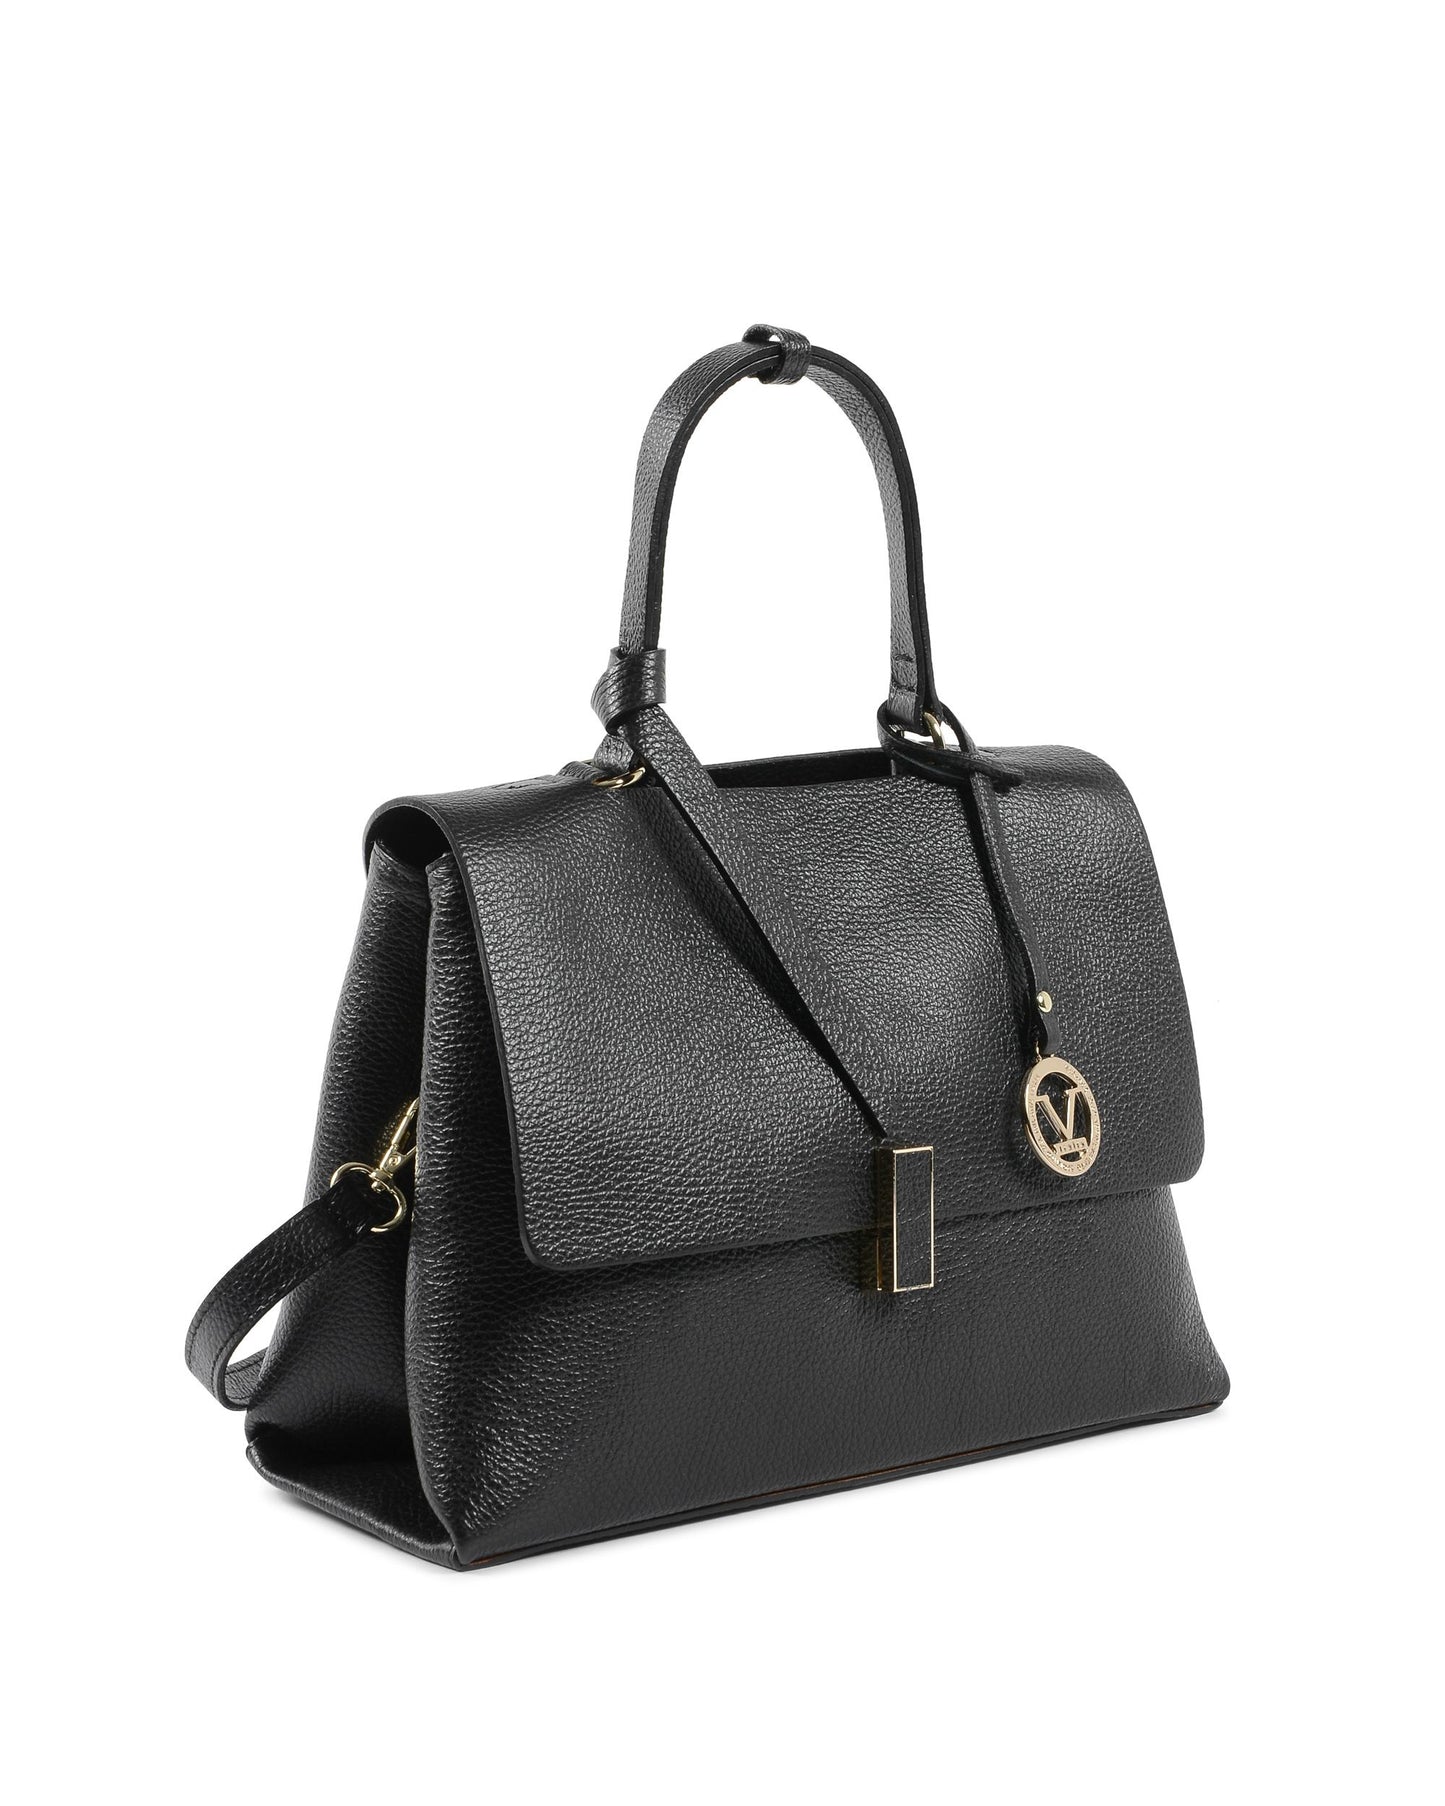 V Italia Womens Handbag Black 10520 DOLLARO NERO